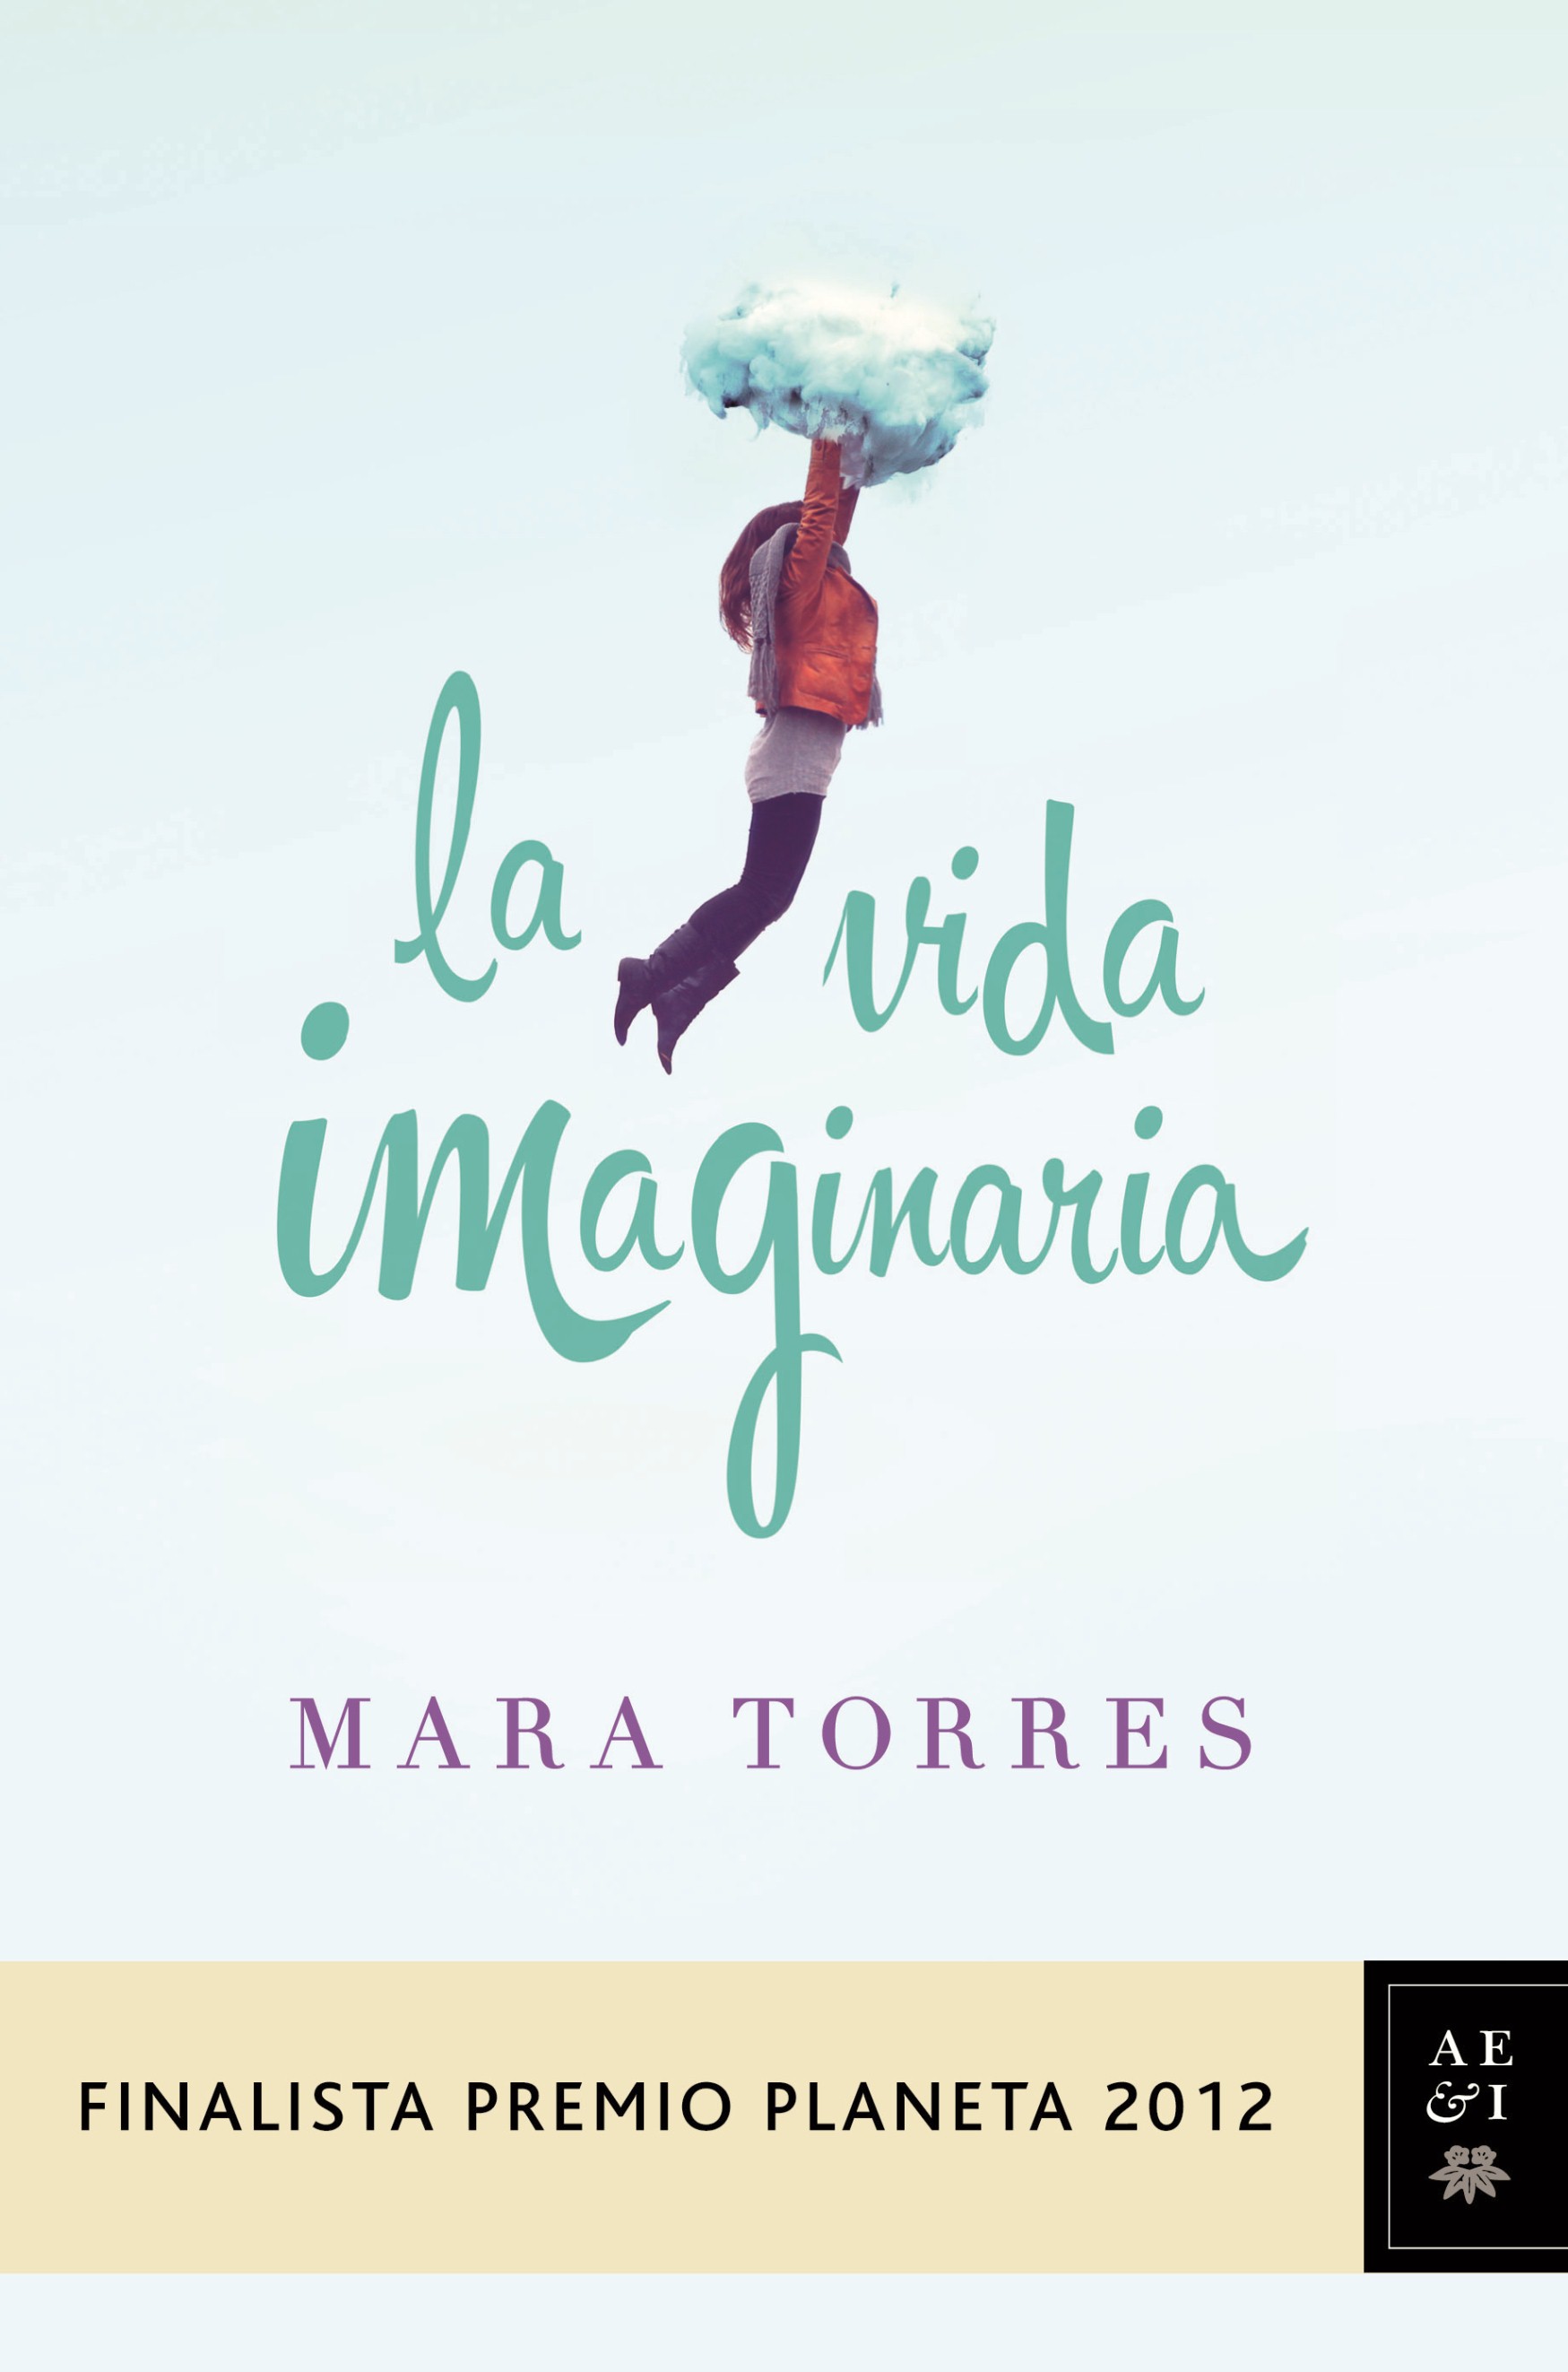 Мара Торрес - "Придуманная жизнь"/Mara Torres - La vida imaginaria  E751d04d39a9c2f779f853a9003ca496